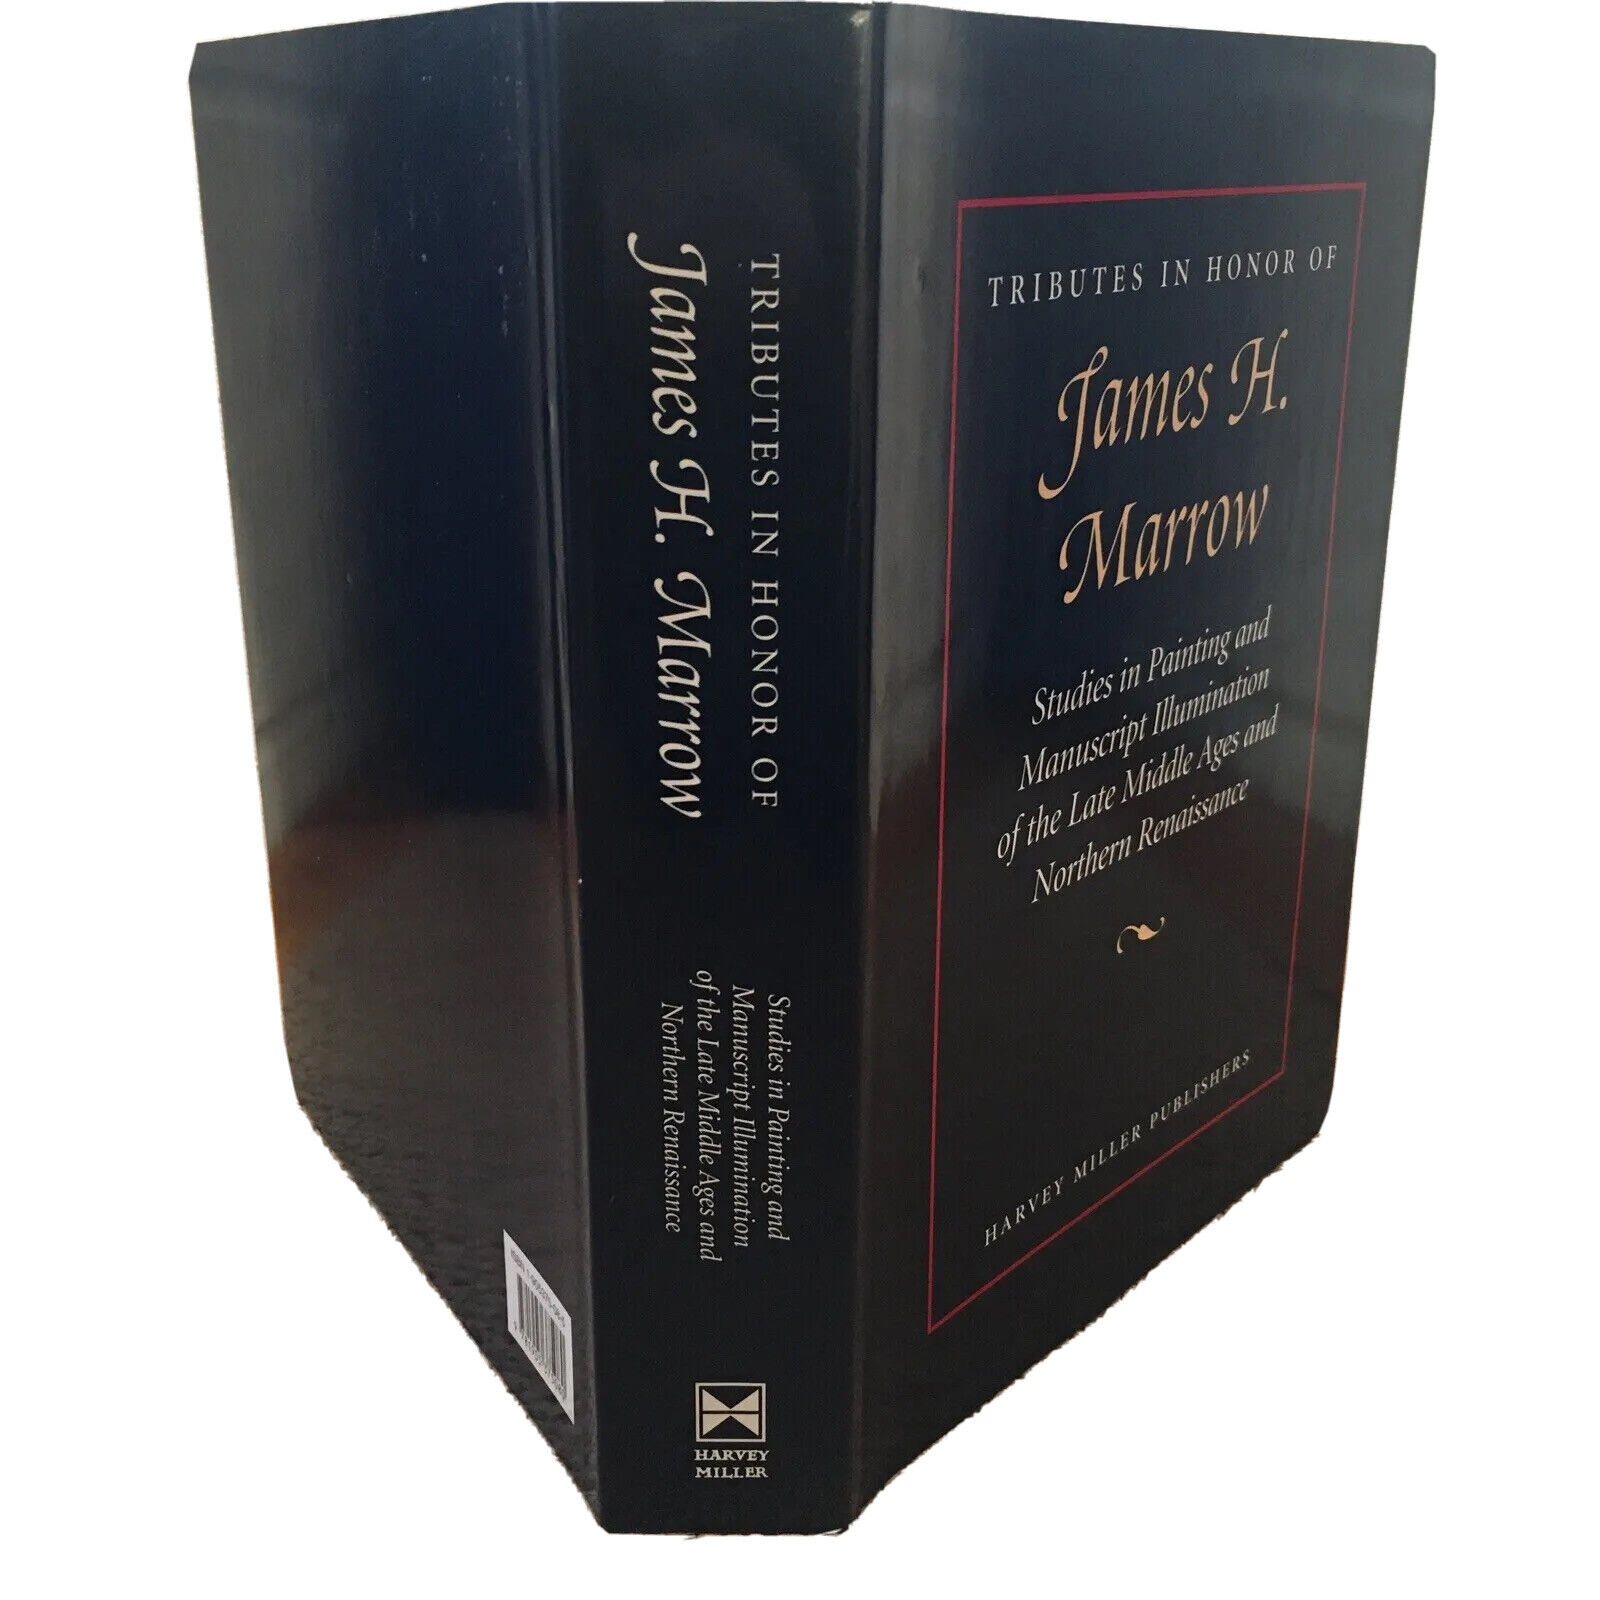 Hommagen zu Ehren von James H. Marrow; ISBN 9781905375080 - Anne Korteweg, Professor Jeffrey Hamburger